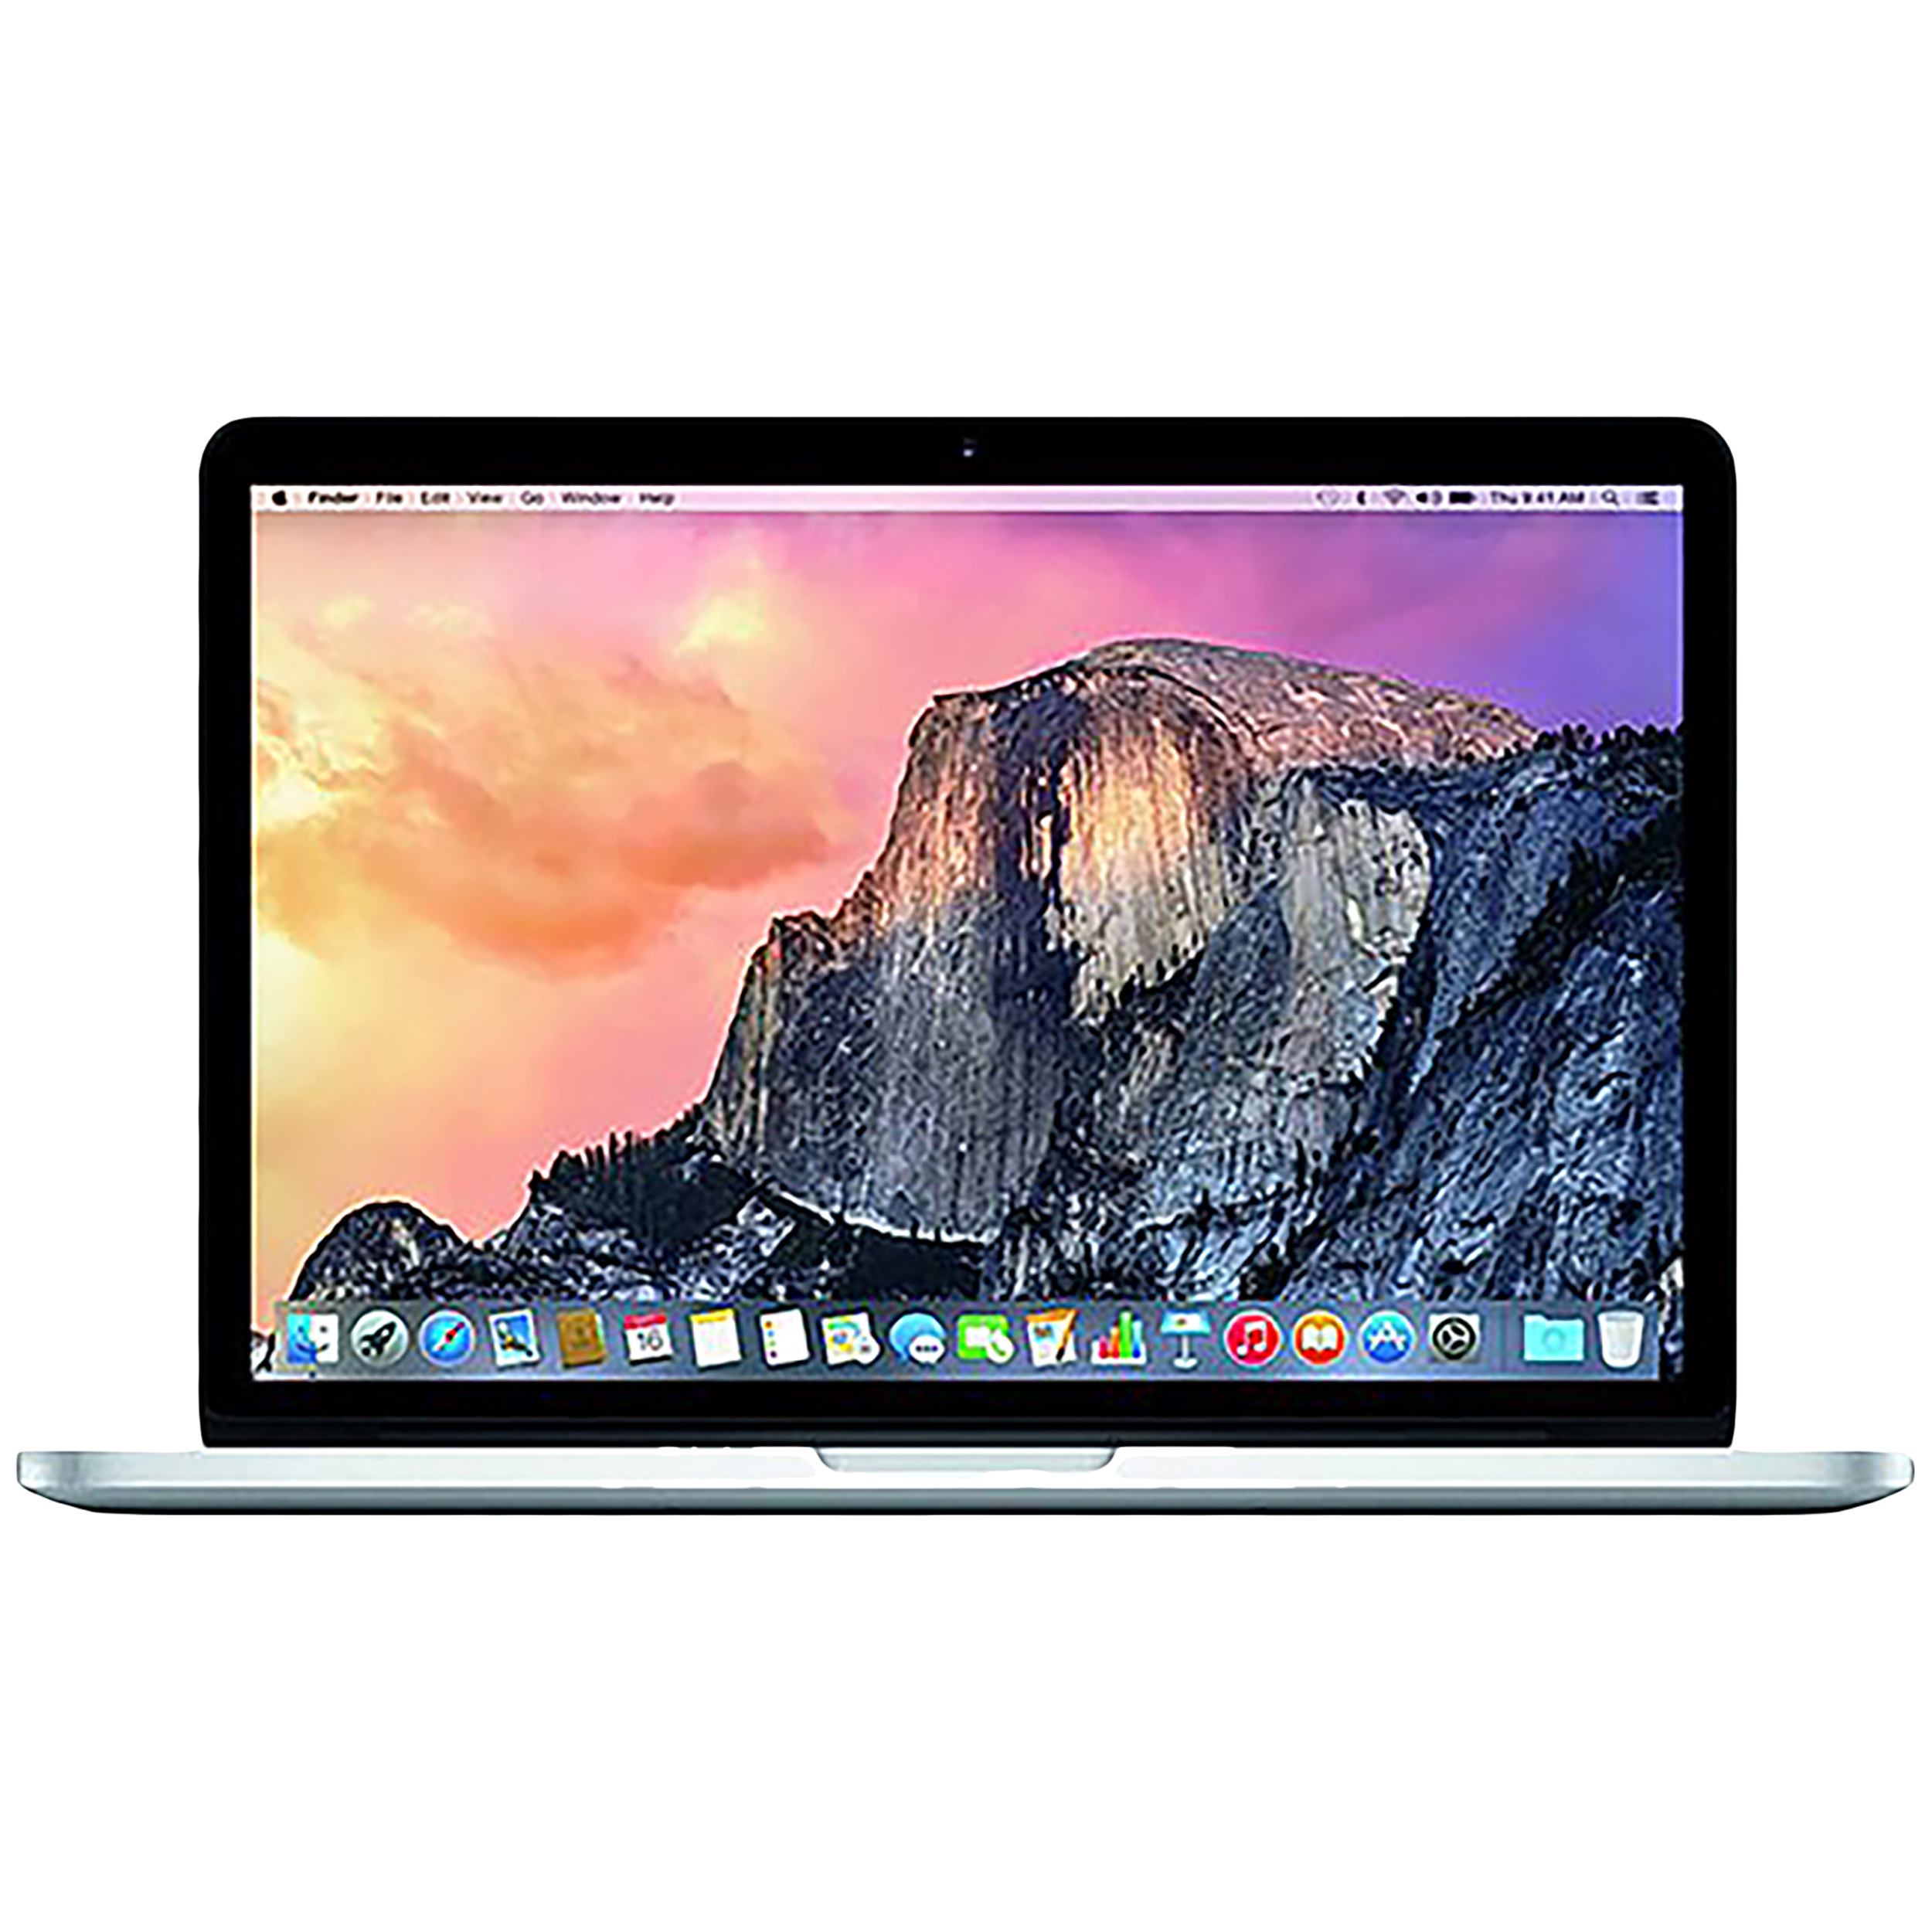 لپ تاپ 15 اینچی اپل مدل MacBook Pro ME294 2013 با صفحه نمایش رتینا